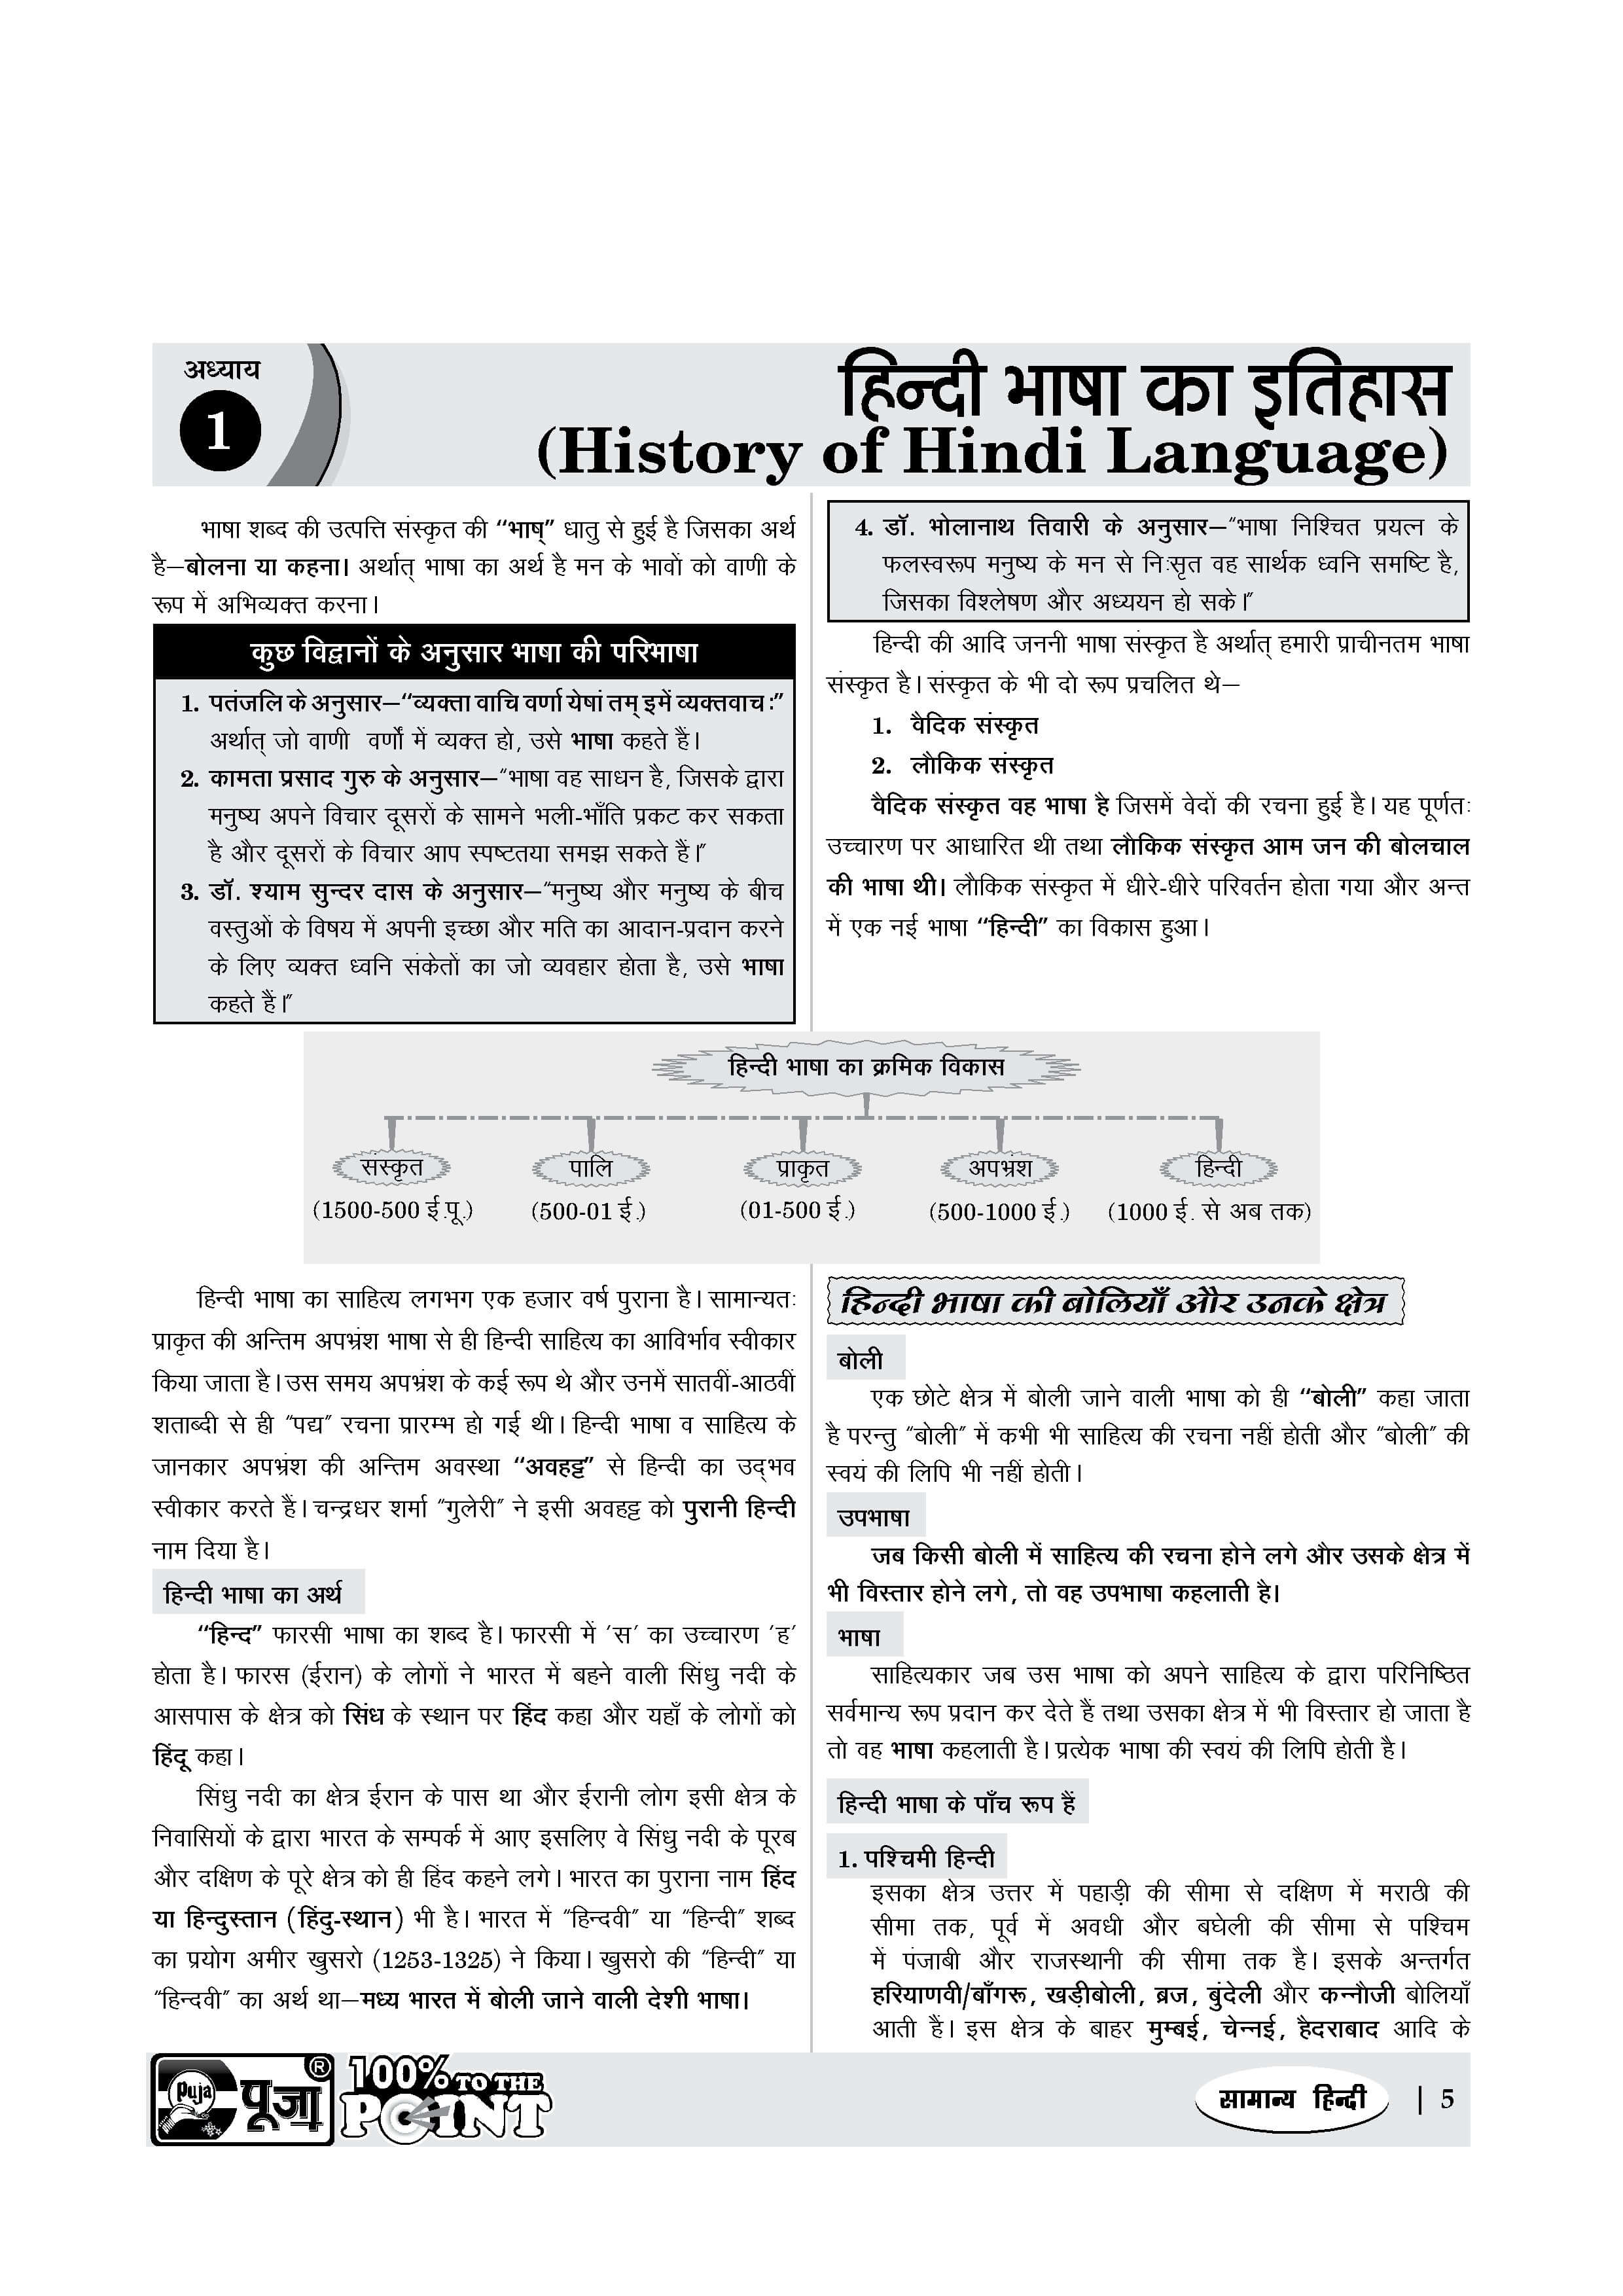 sampurn ganit by pandharinath rane in English pdf